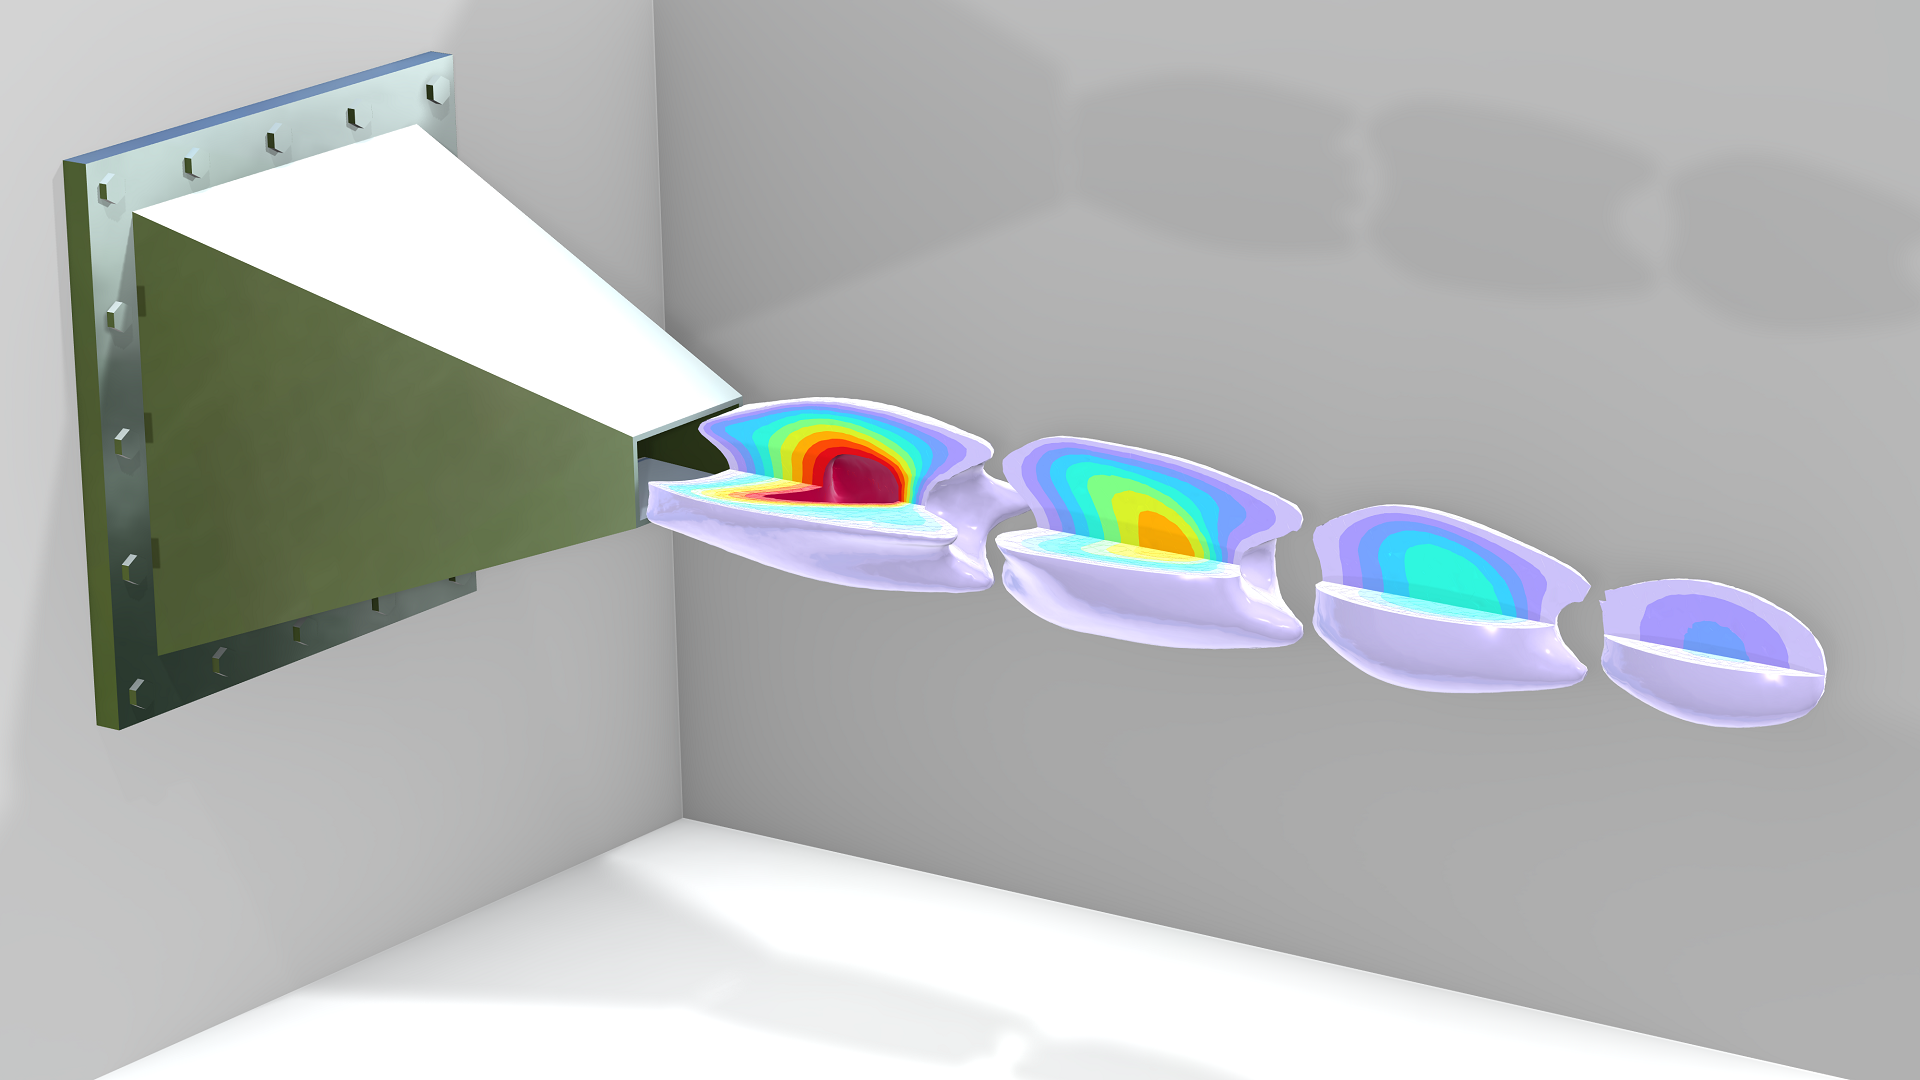 title="" alt="Модель течения из сопла ПВРД показана в виде изоповерхностей с использованием цветовой палитры Prism".